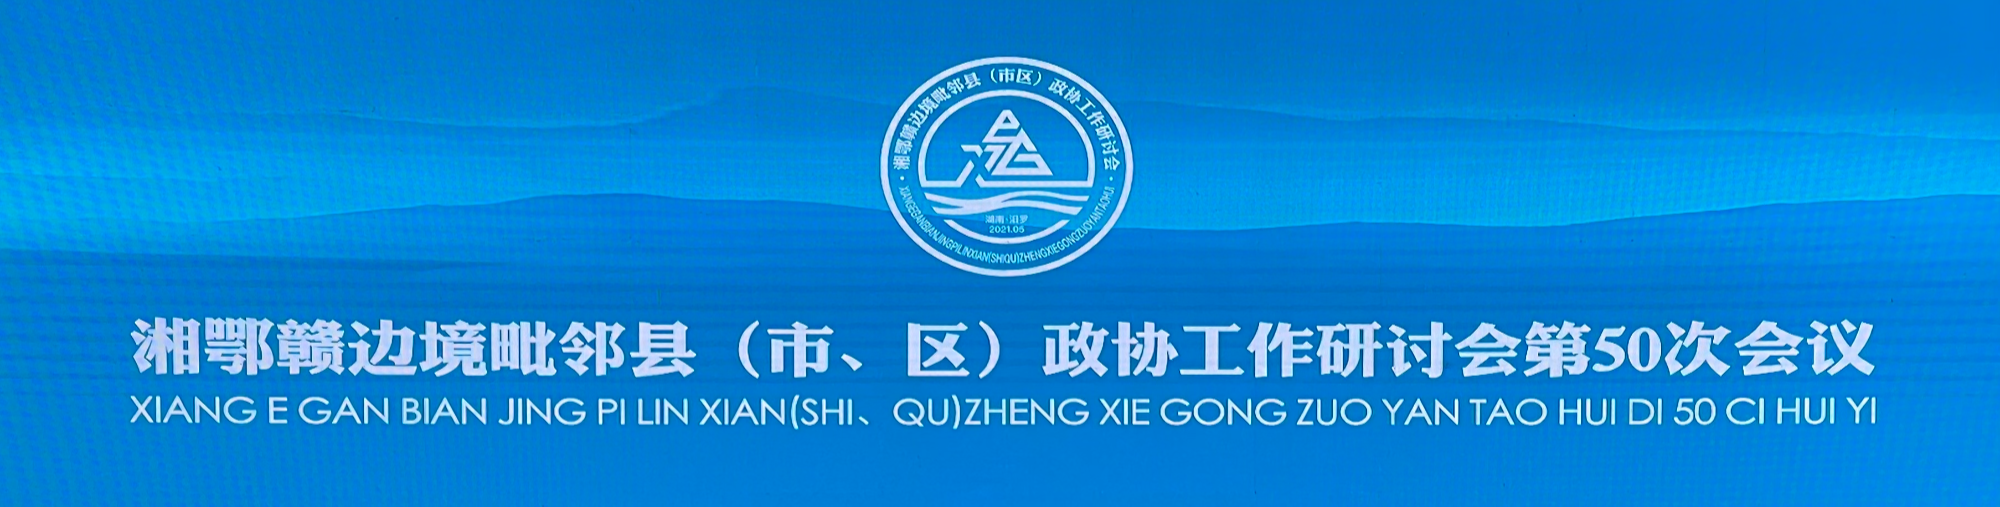 湘鄂赣边境毗邻县（市、区）政协工作研讨会第50次会议